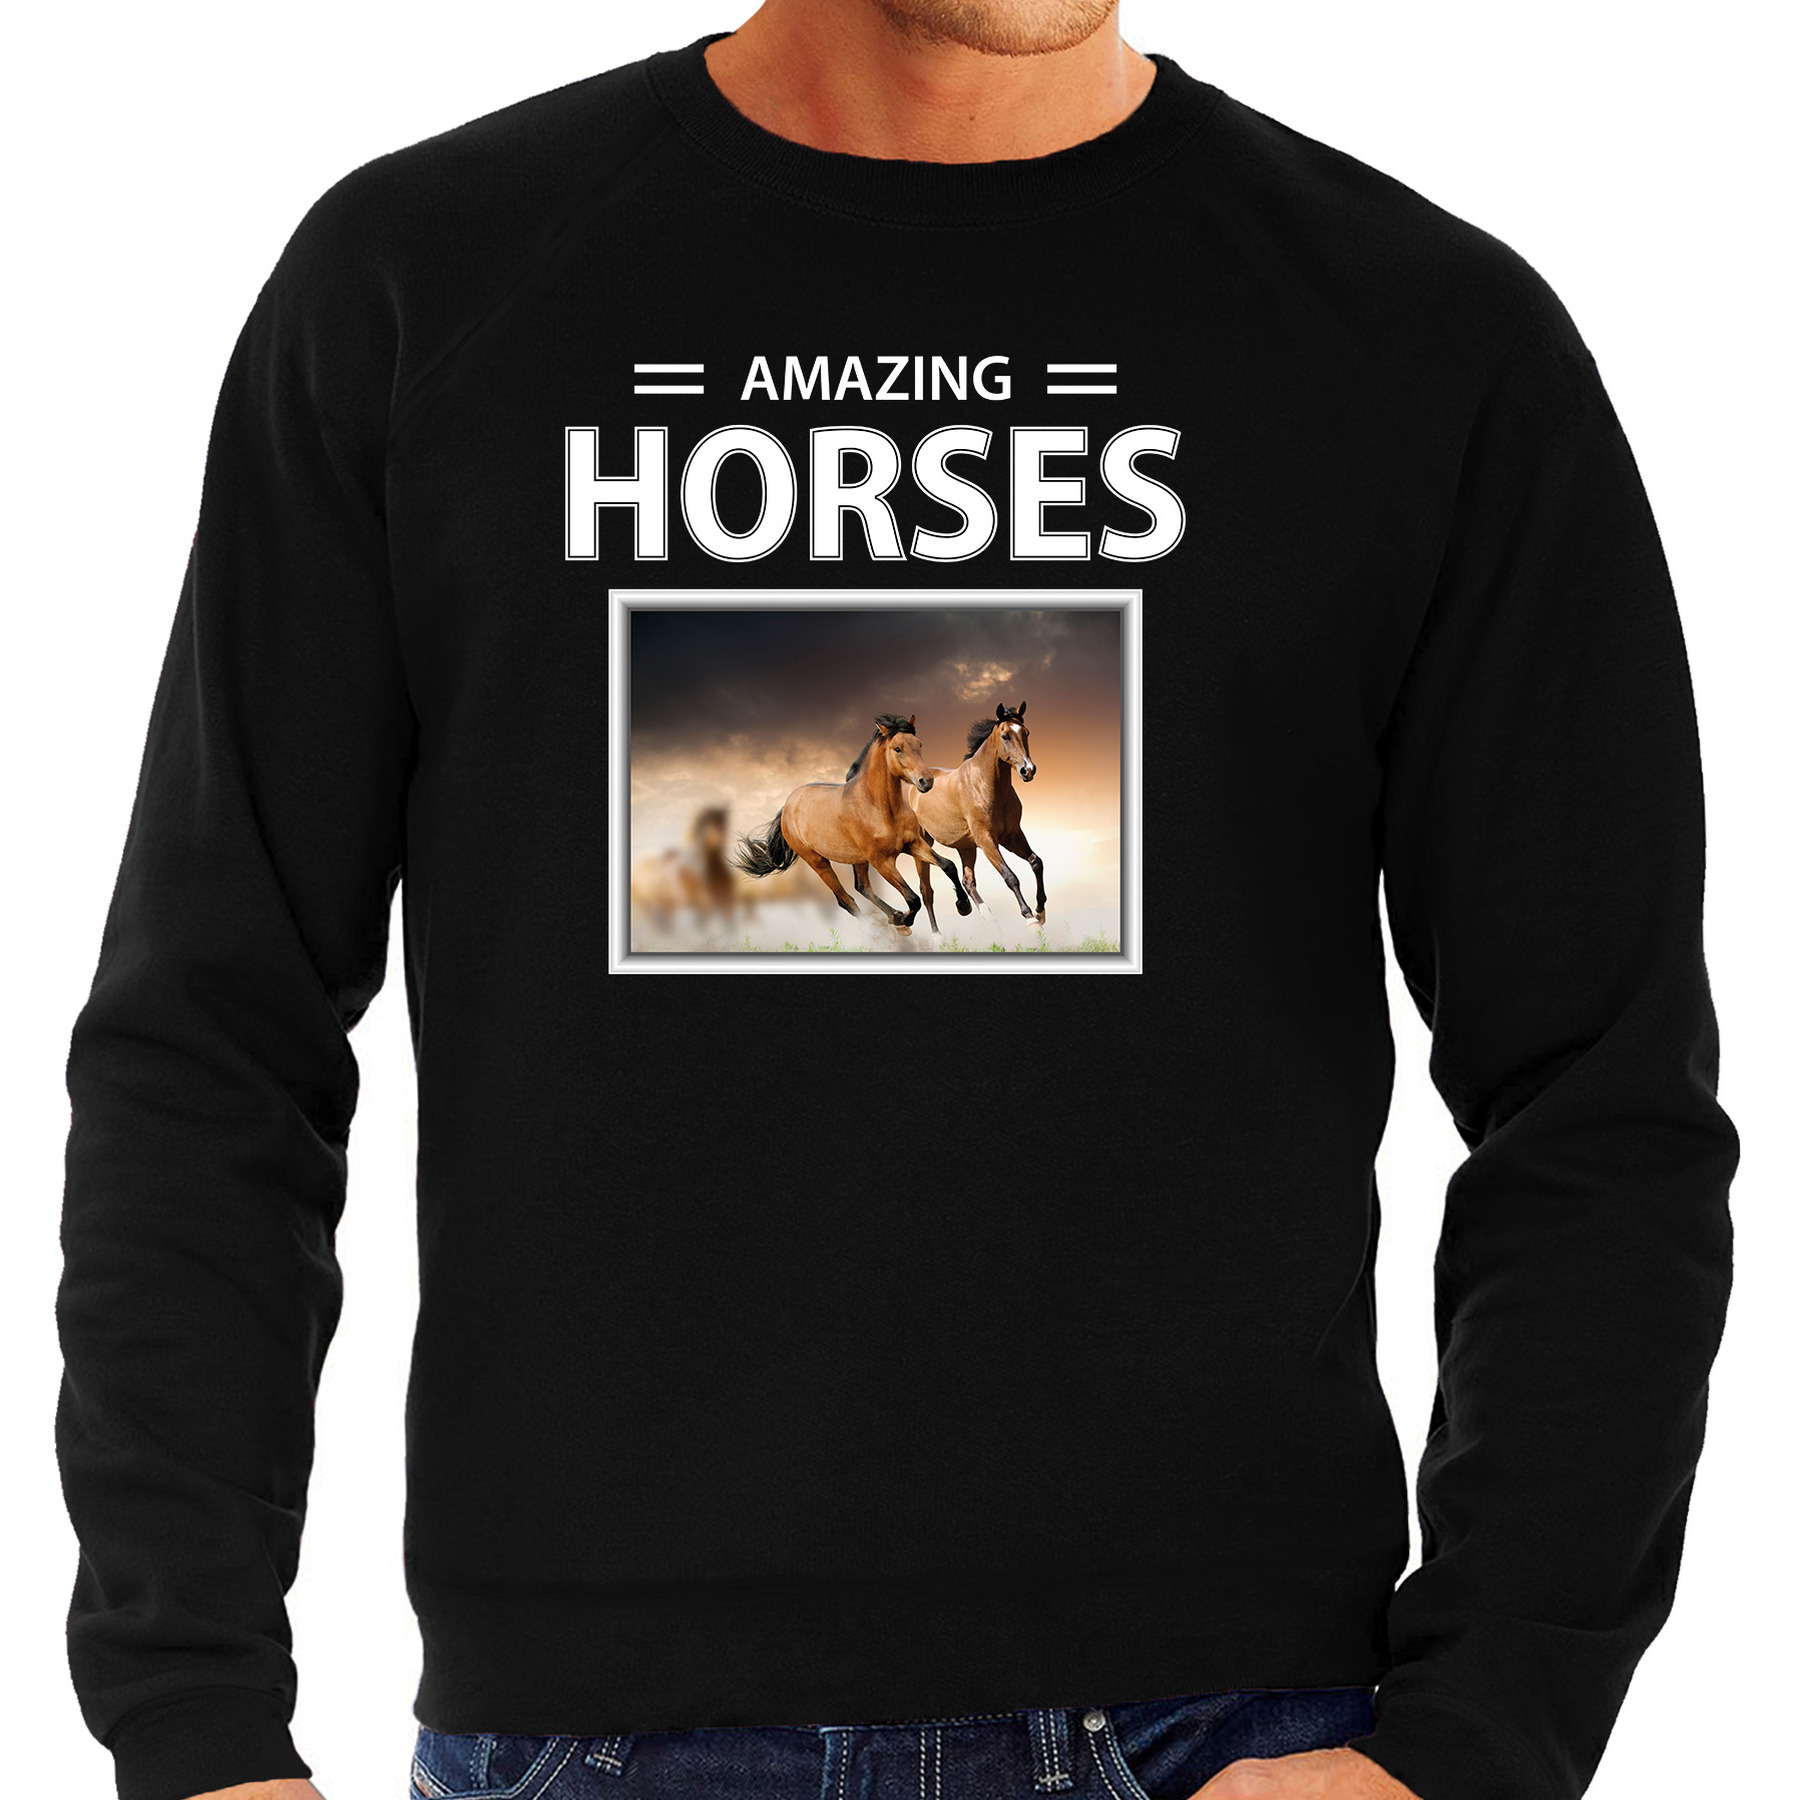 Bruine paarden sweater - trui met dieren foto amazing horses zwart voor heren